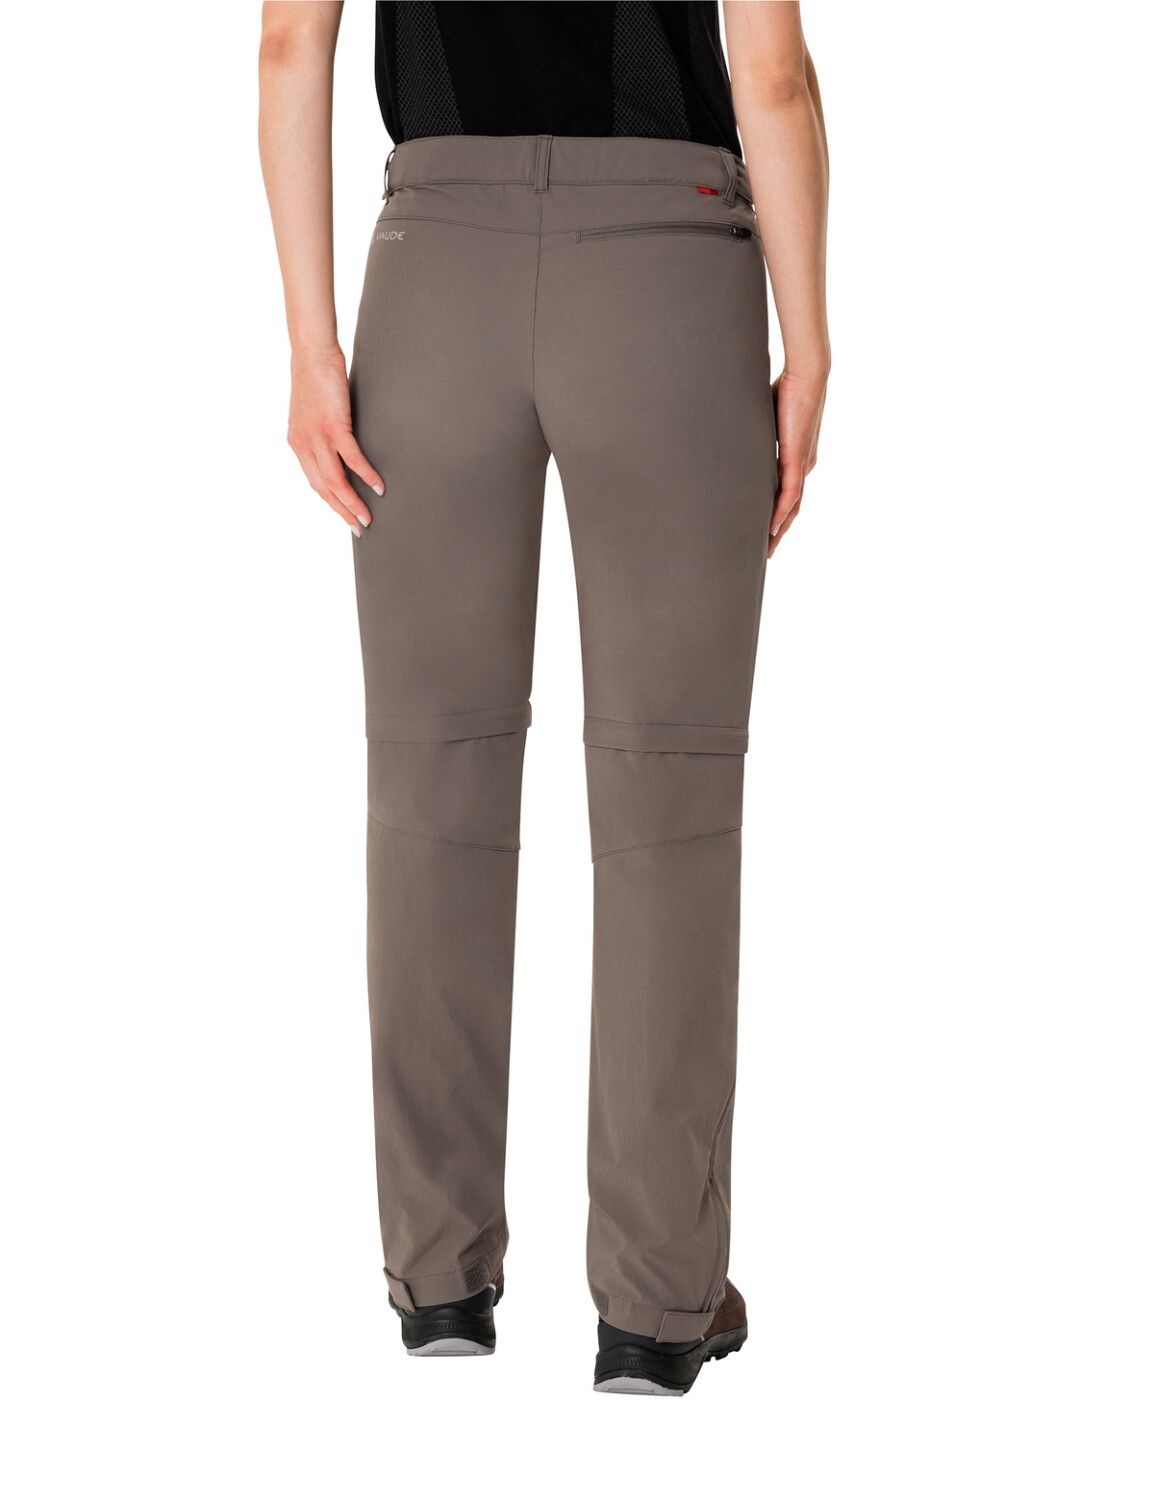 VAUDE Women's Farley Stretch ZO T-Zip Pants (Bild 28)